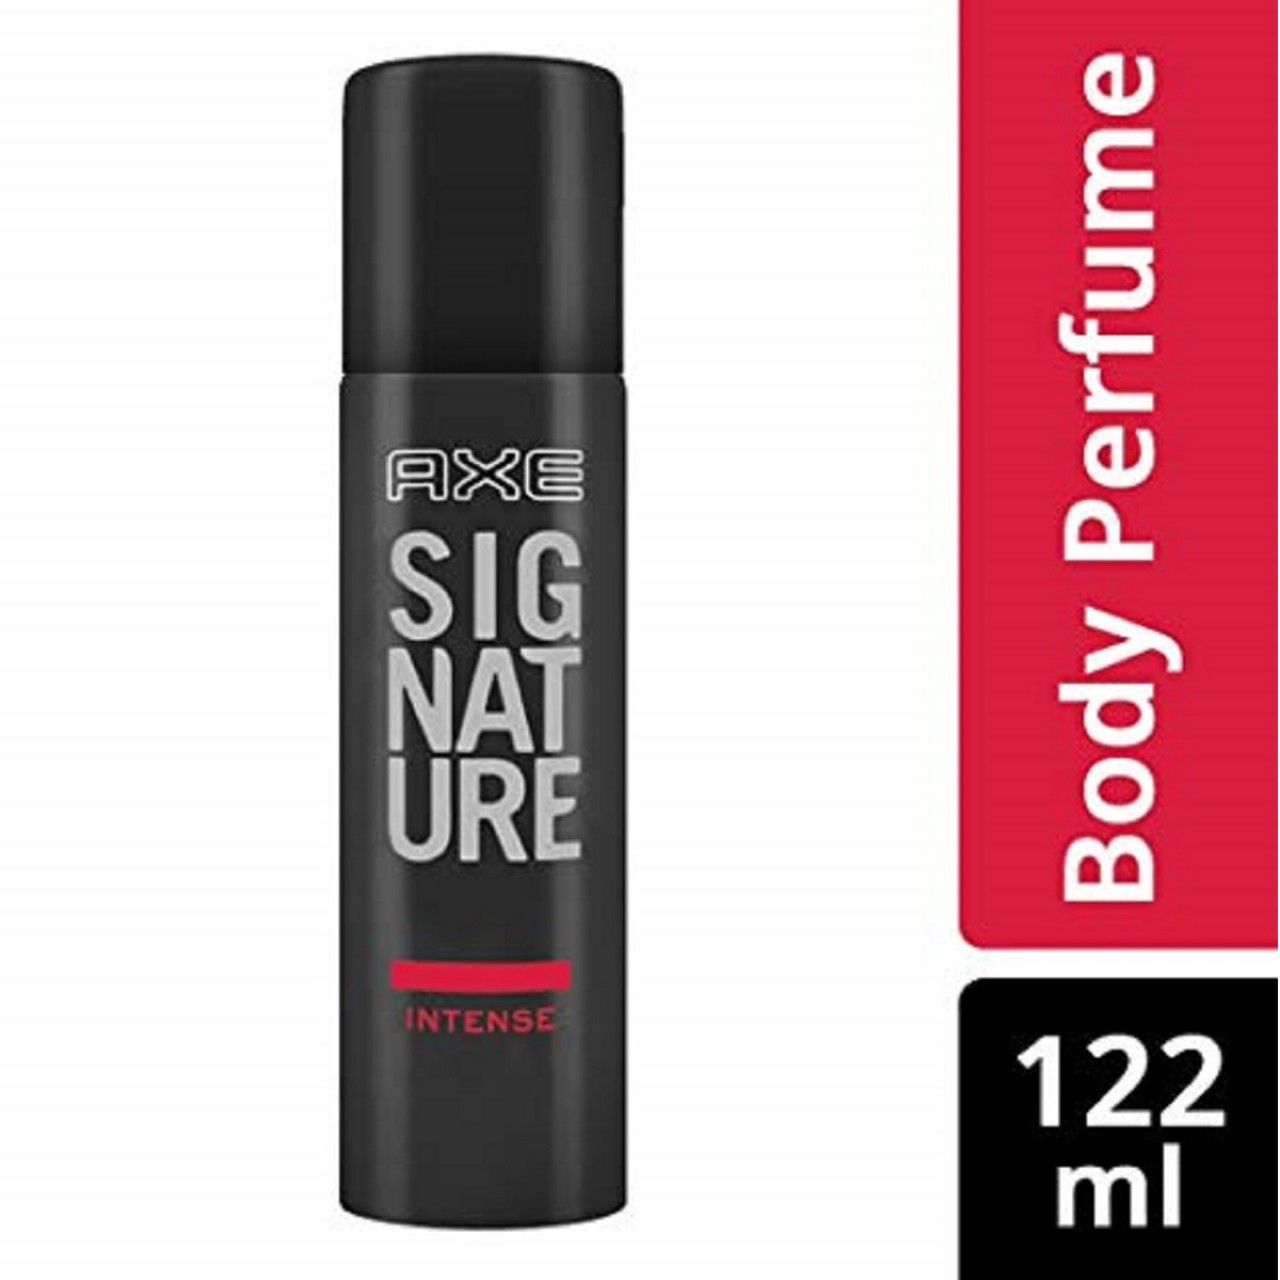 Axe Signature Intense Perfume Body Spray For Men - 122 ml